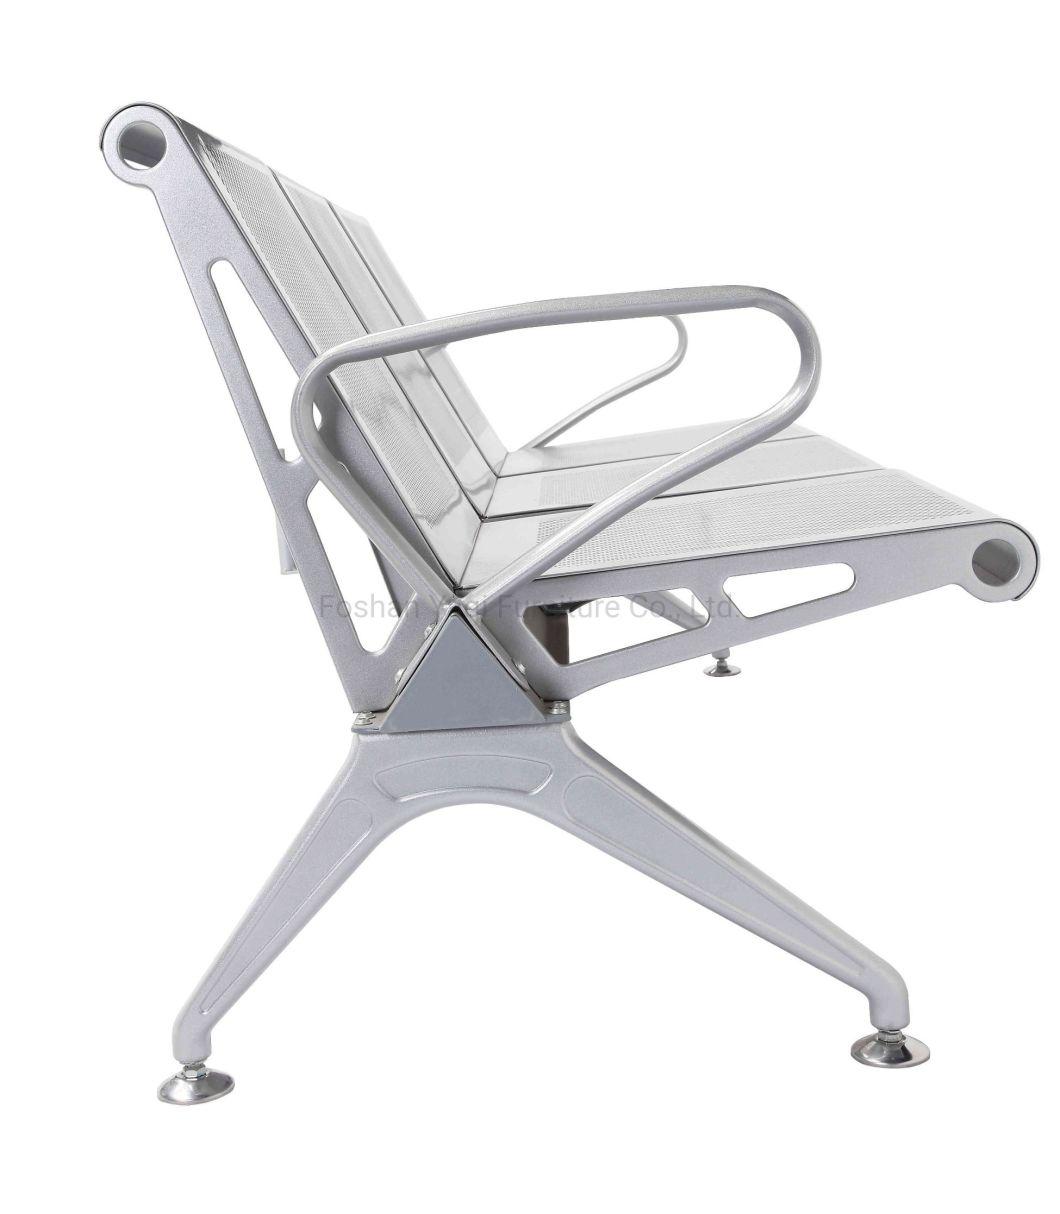 Steel Airport Chair/Waiting Chair (YA-34B)